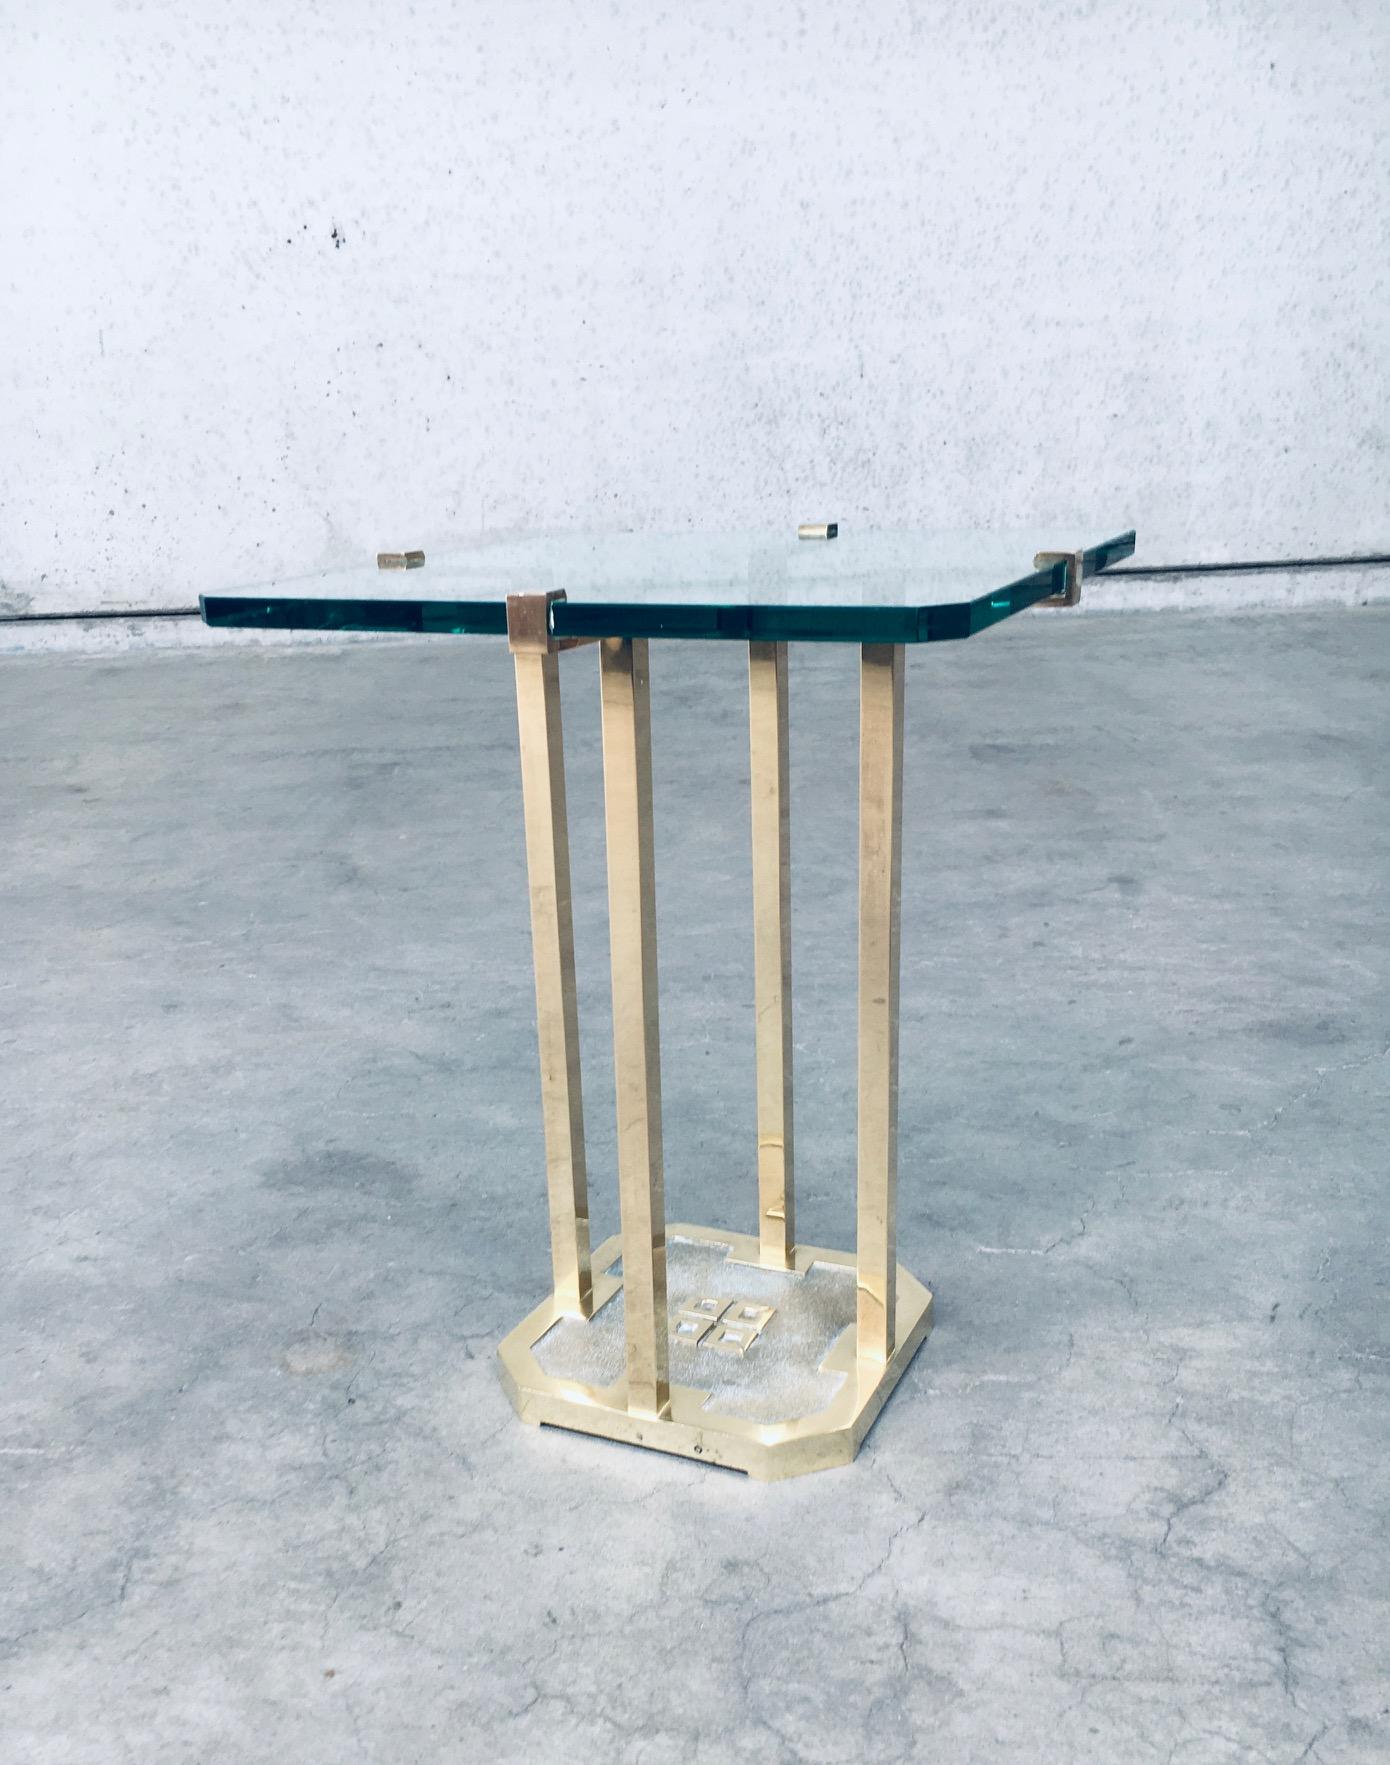 Vintage Postmodern Design Table d'appoint moderniste modèle T18 par Peter Ghyczy. Fabriqué aux Pays-Bas, dans les années 1970. Laiton patiné et verre taillé épais. En très bon état. Mesures : 41cm x 41cm x53cm.

Après la révolution hongroise de